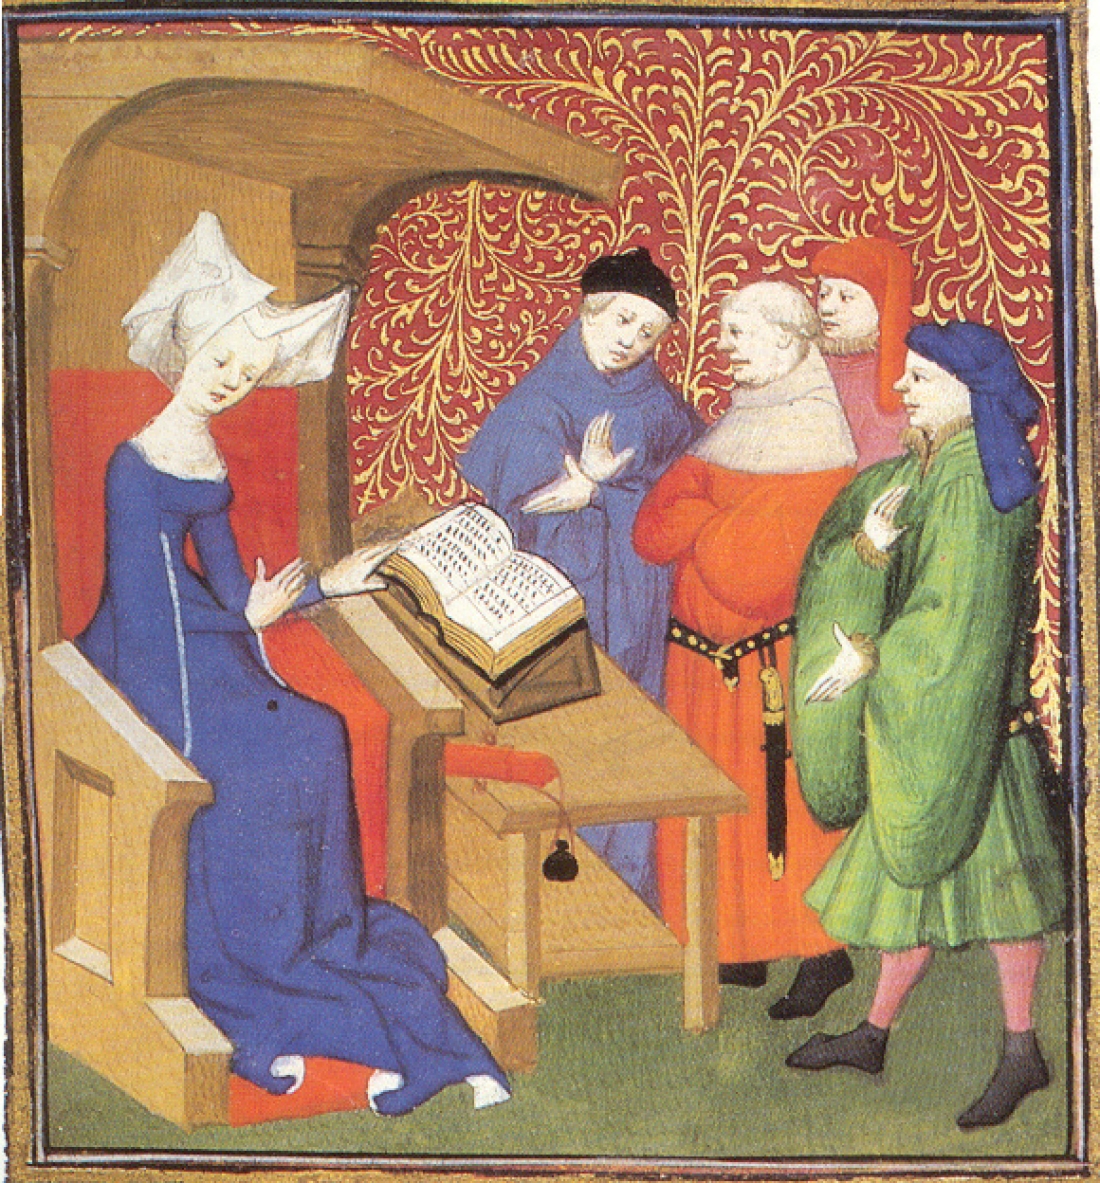 Μικρογραφία που απεικονίζει την Κριστίν ντε Πιζάν, ποιήτρια και γραφιά του Καρόλου VI της Γαλλίας (1364 - περ. 1430).  